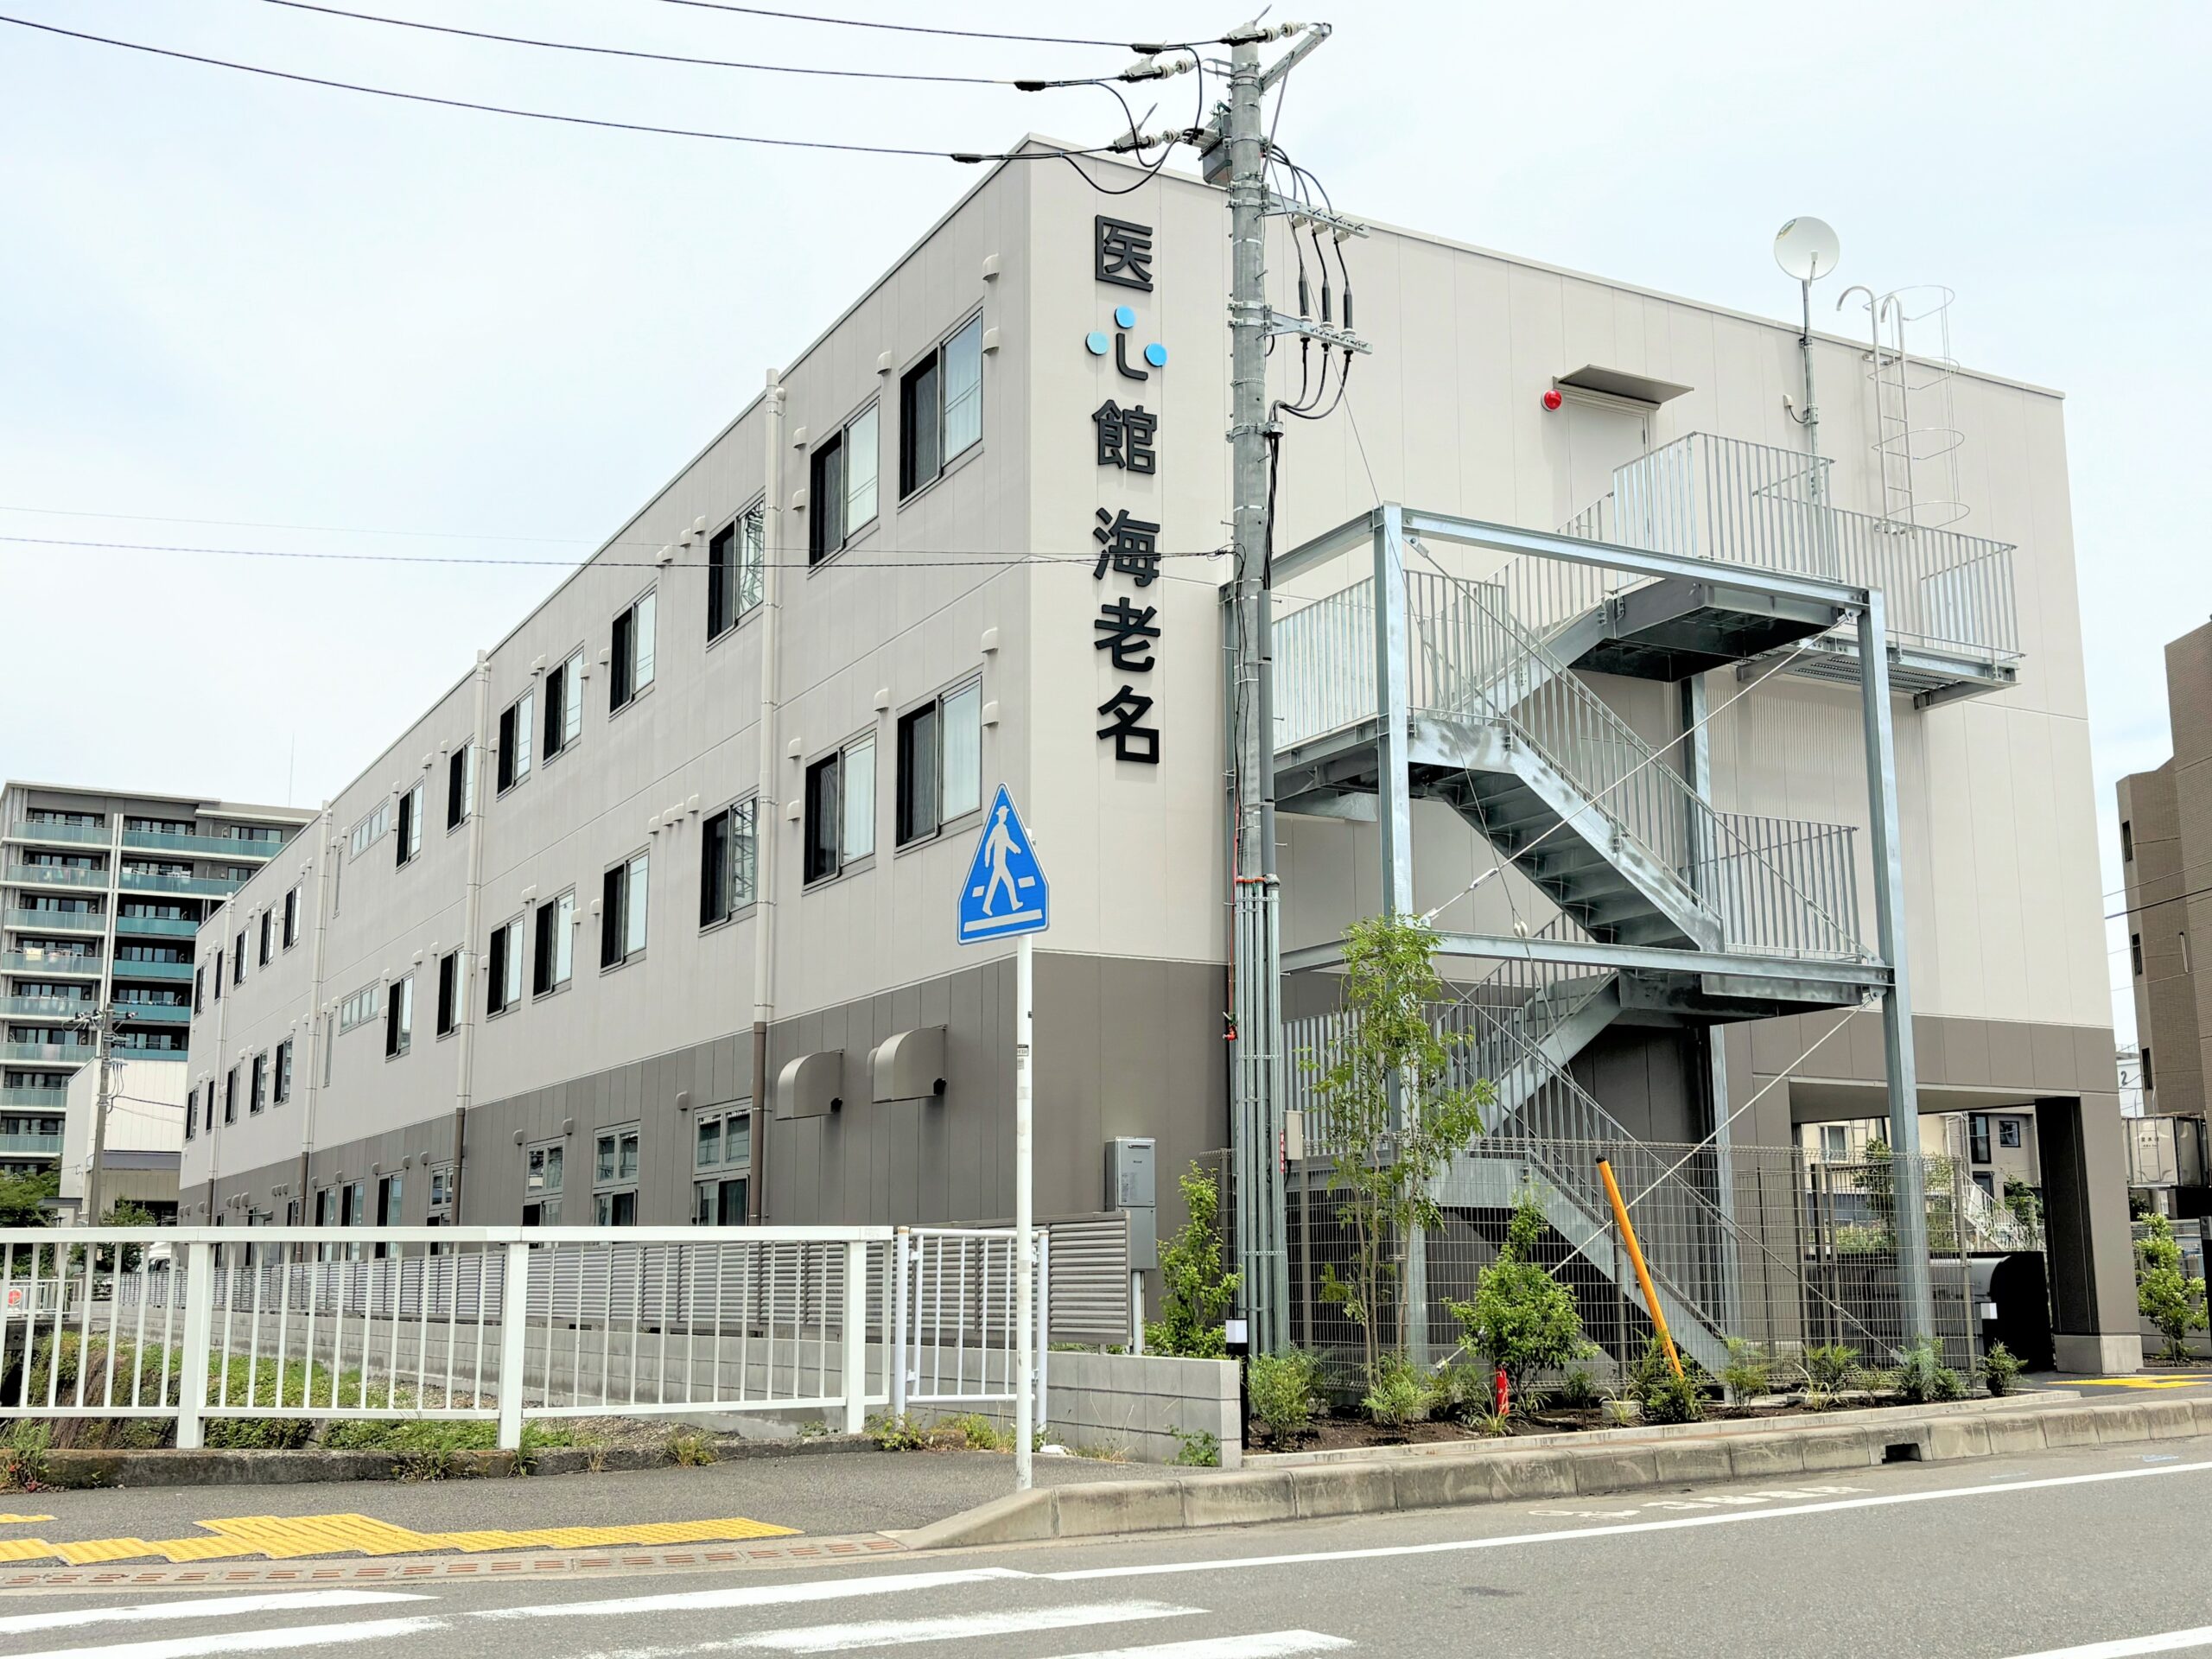 神奈川県では15施設目となる 有料老人ホーム「医心館 海老名」をオープンしました